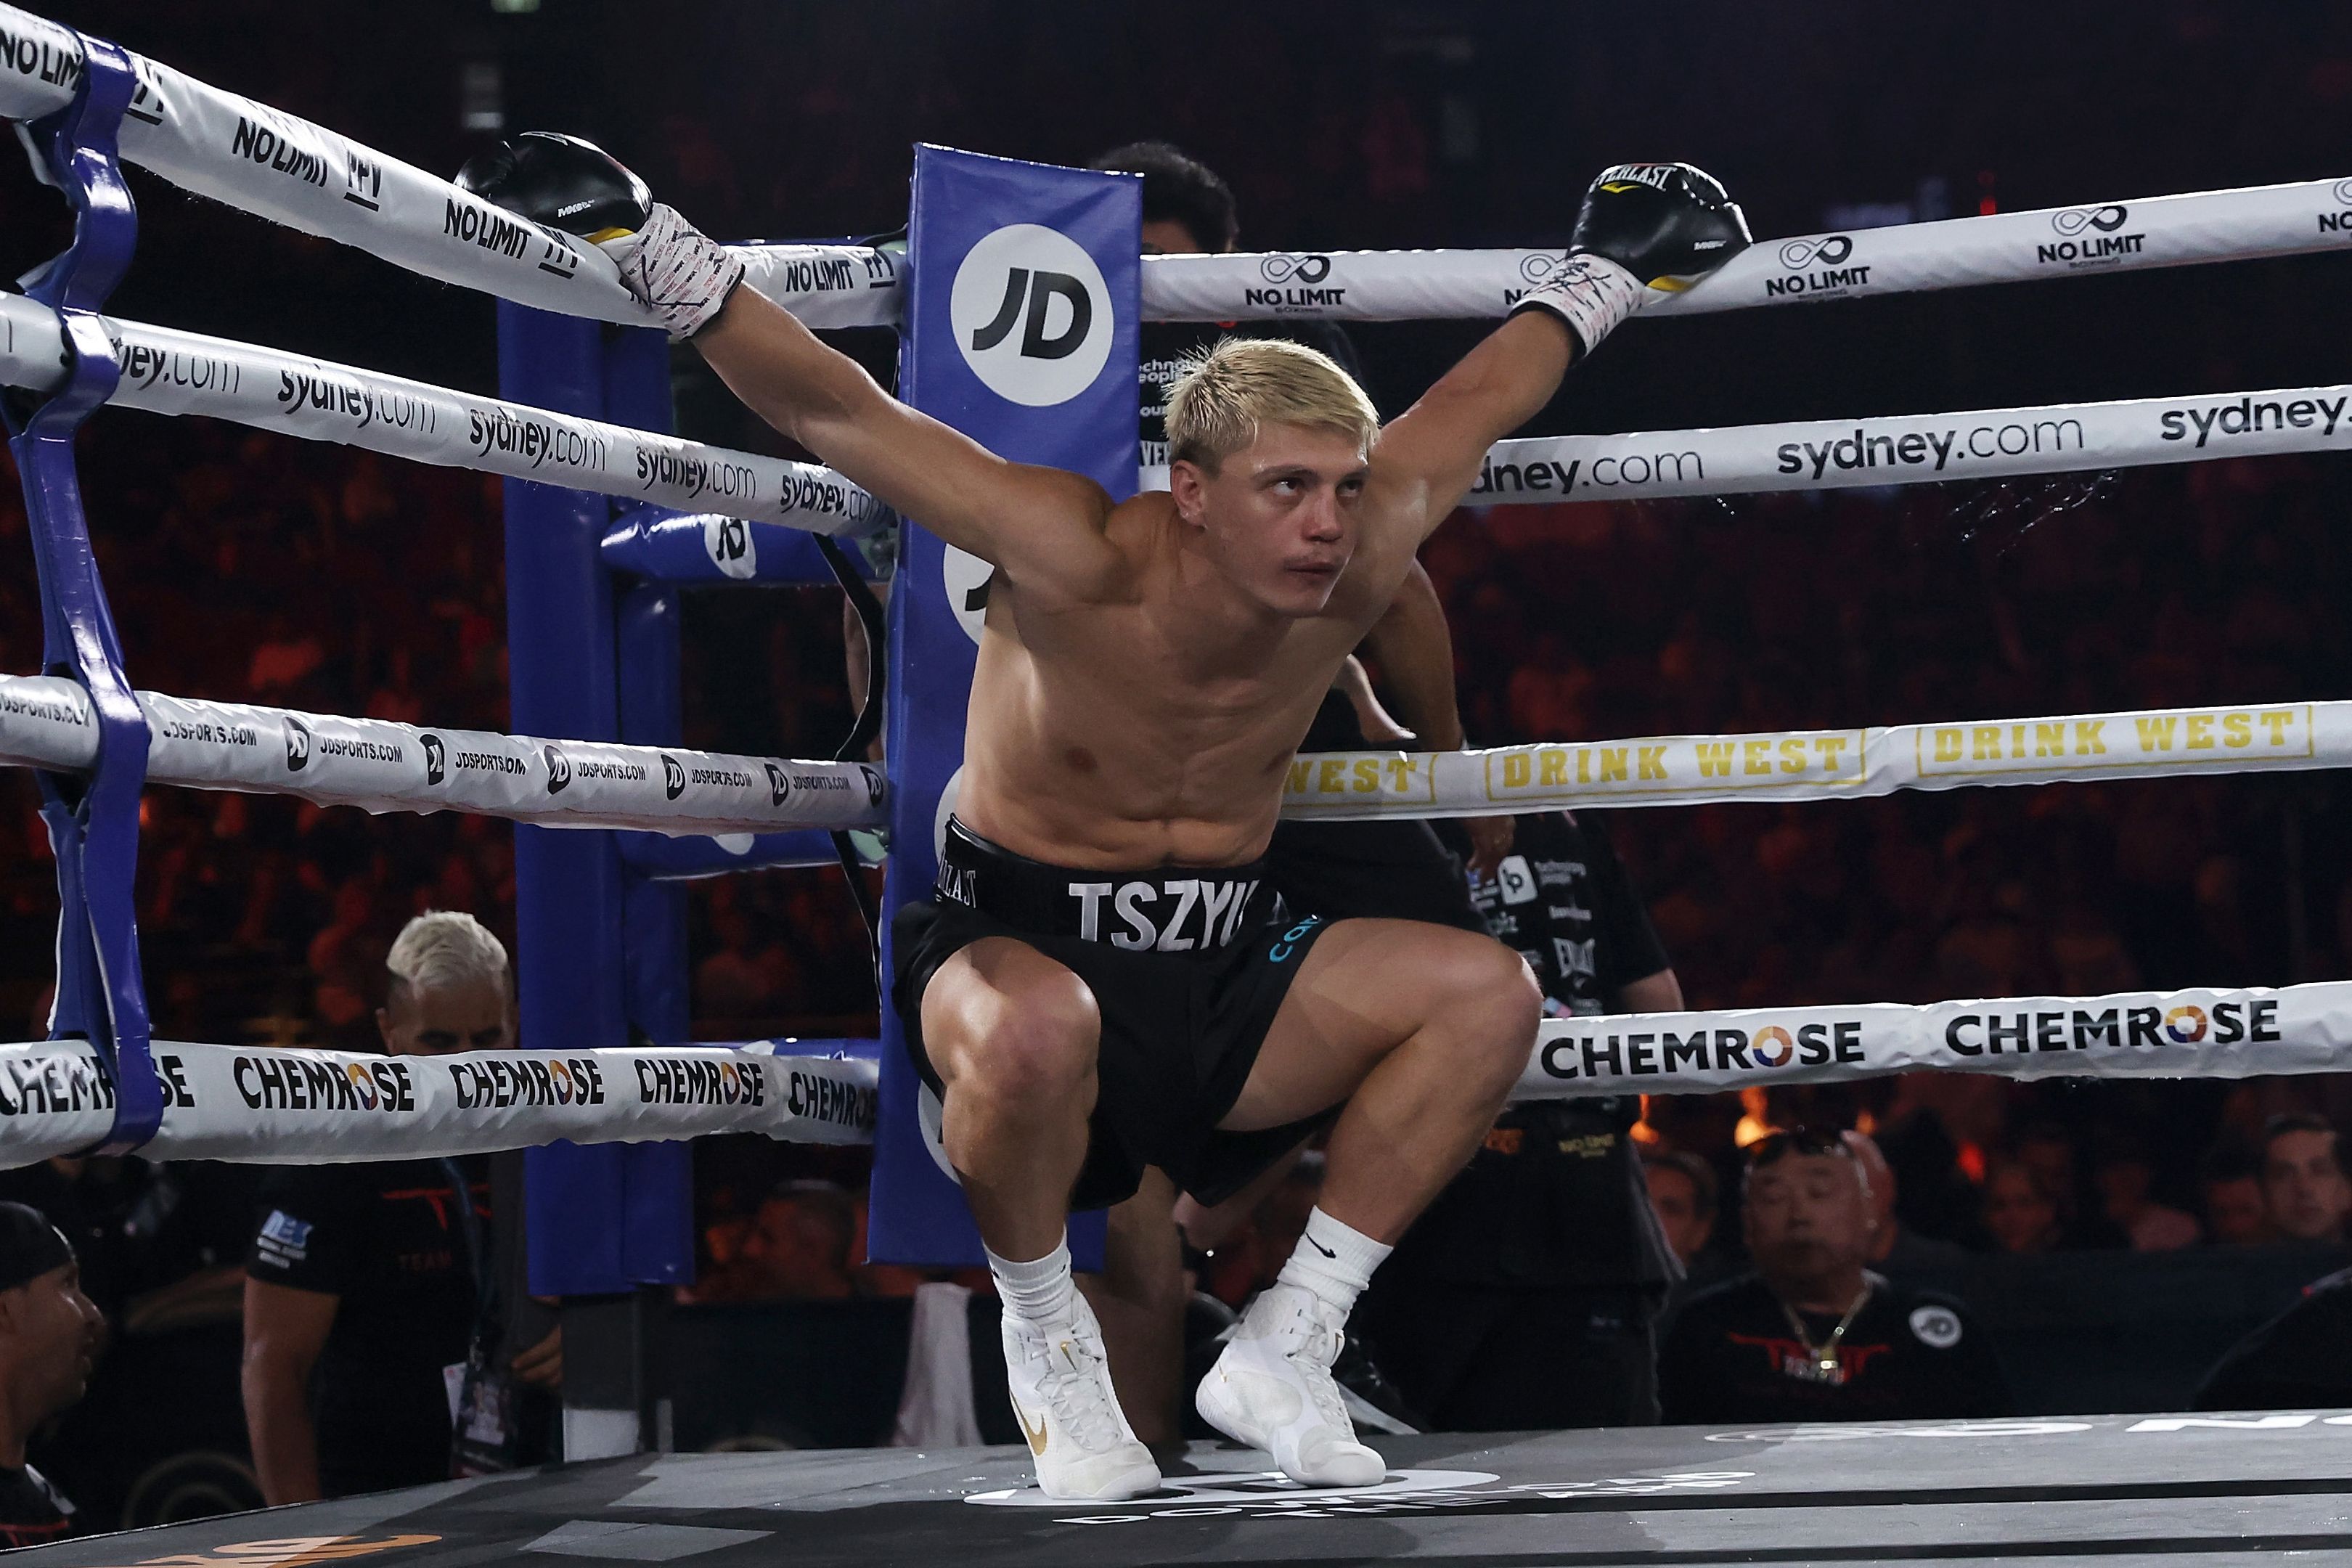 'I don't look like a tough guy': Nikita Tszyu embraces boxing world underestimating him